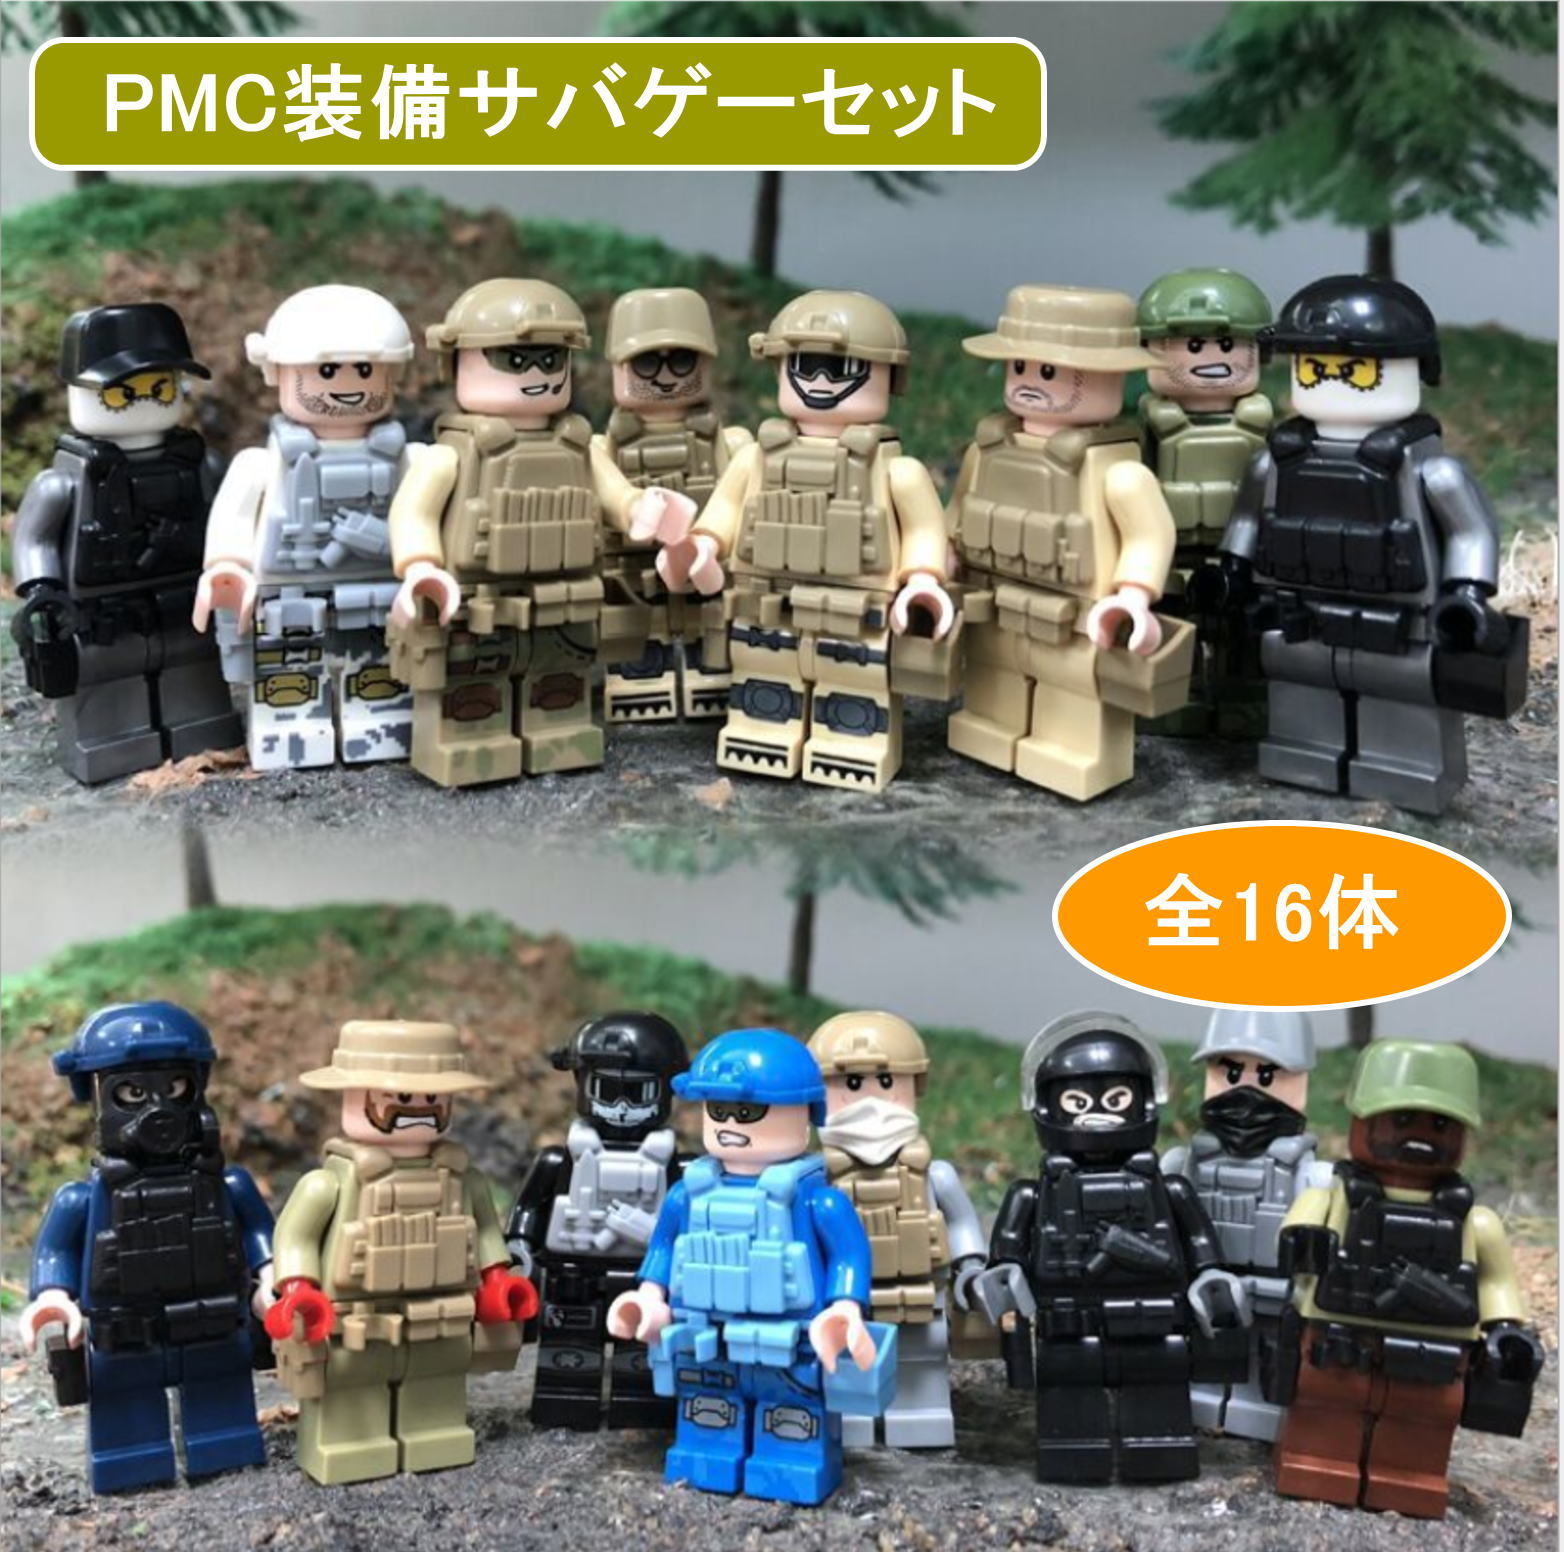 ミニフィグ PMC装備サバゲー 16体セット ミニフィグ PMC装備サバゲー 16体セット 互換 ブロック 人形 ミニフィギュア 子 供 キッズ 男の子 女の子 おもちゃ プレゼント